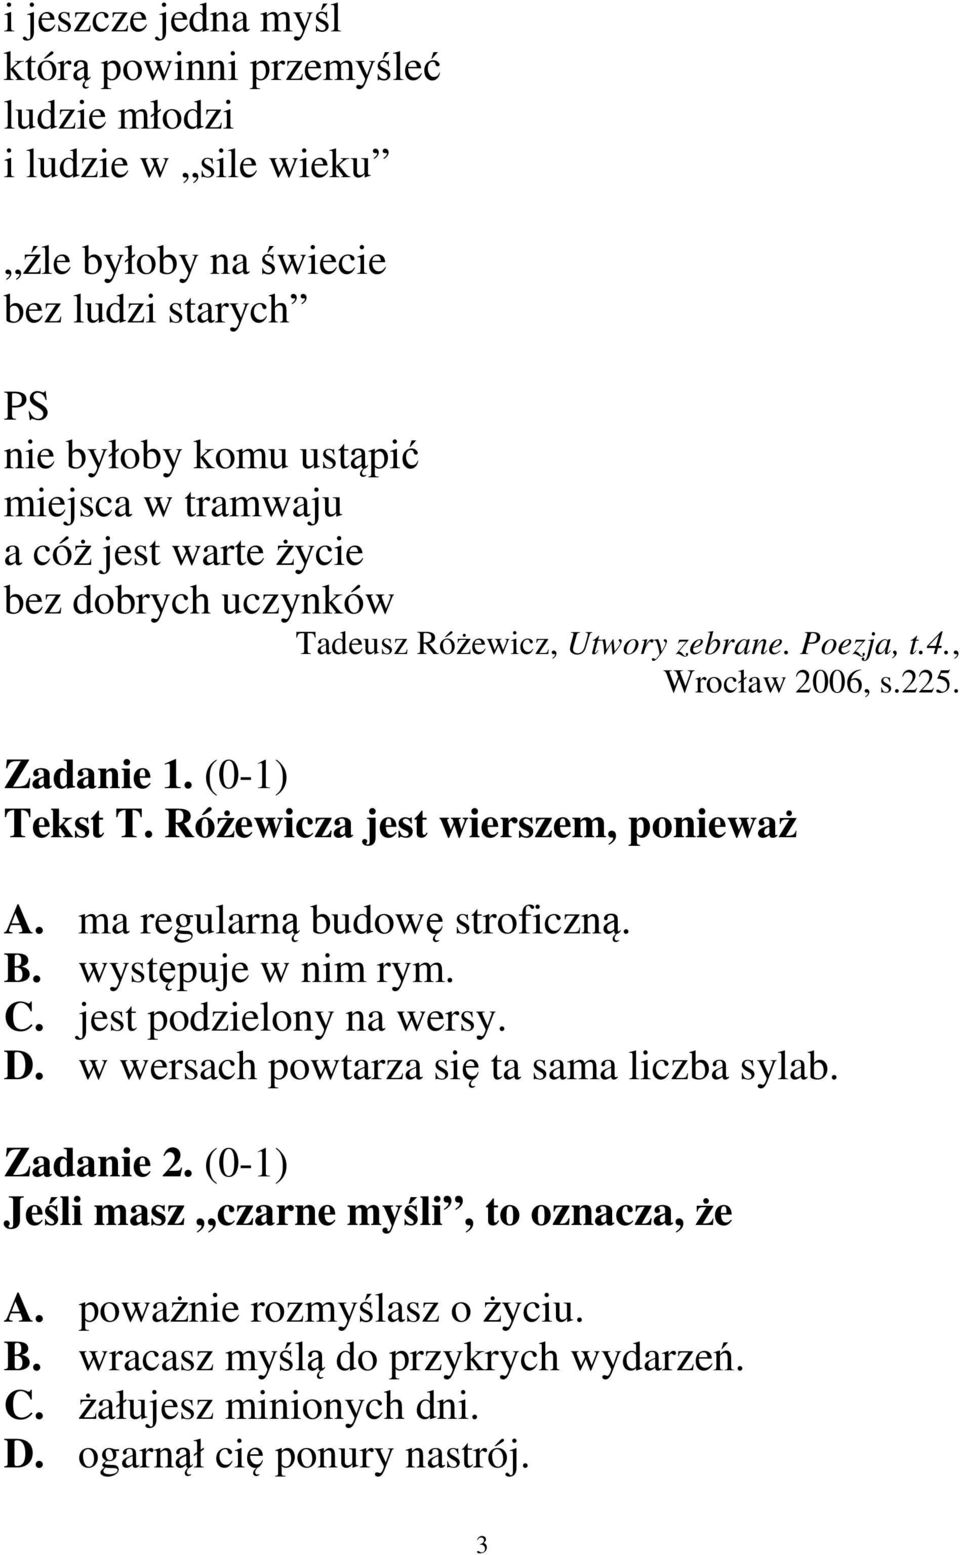 Różewicza jest wierszem, ponieważ A. ma regularną budowę stroficzną. B. występuje w nim rym. C. jest podzielony na wersy. D.